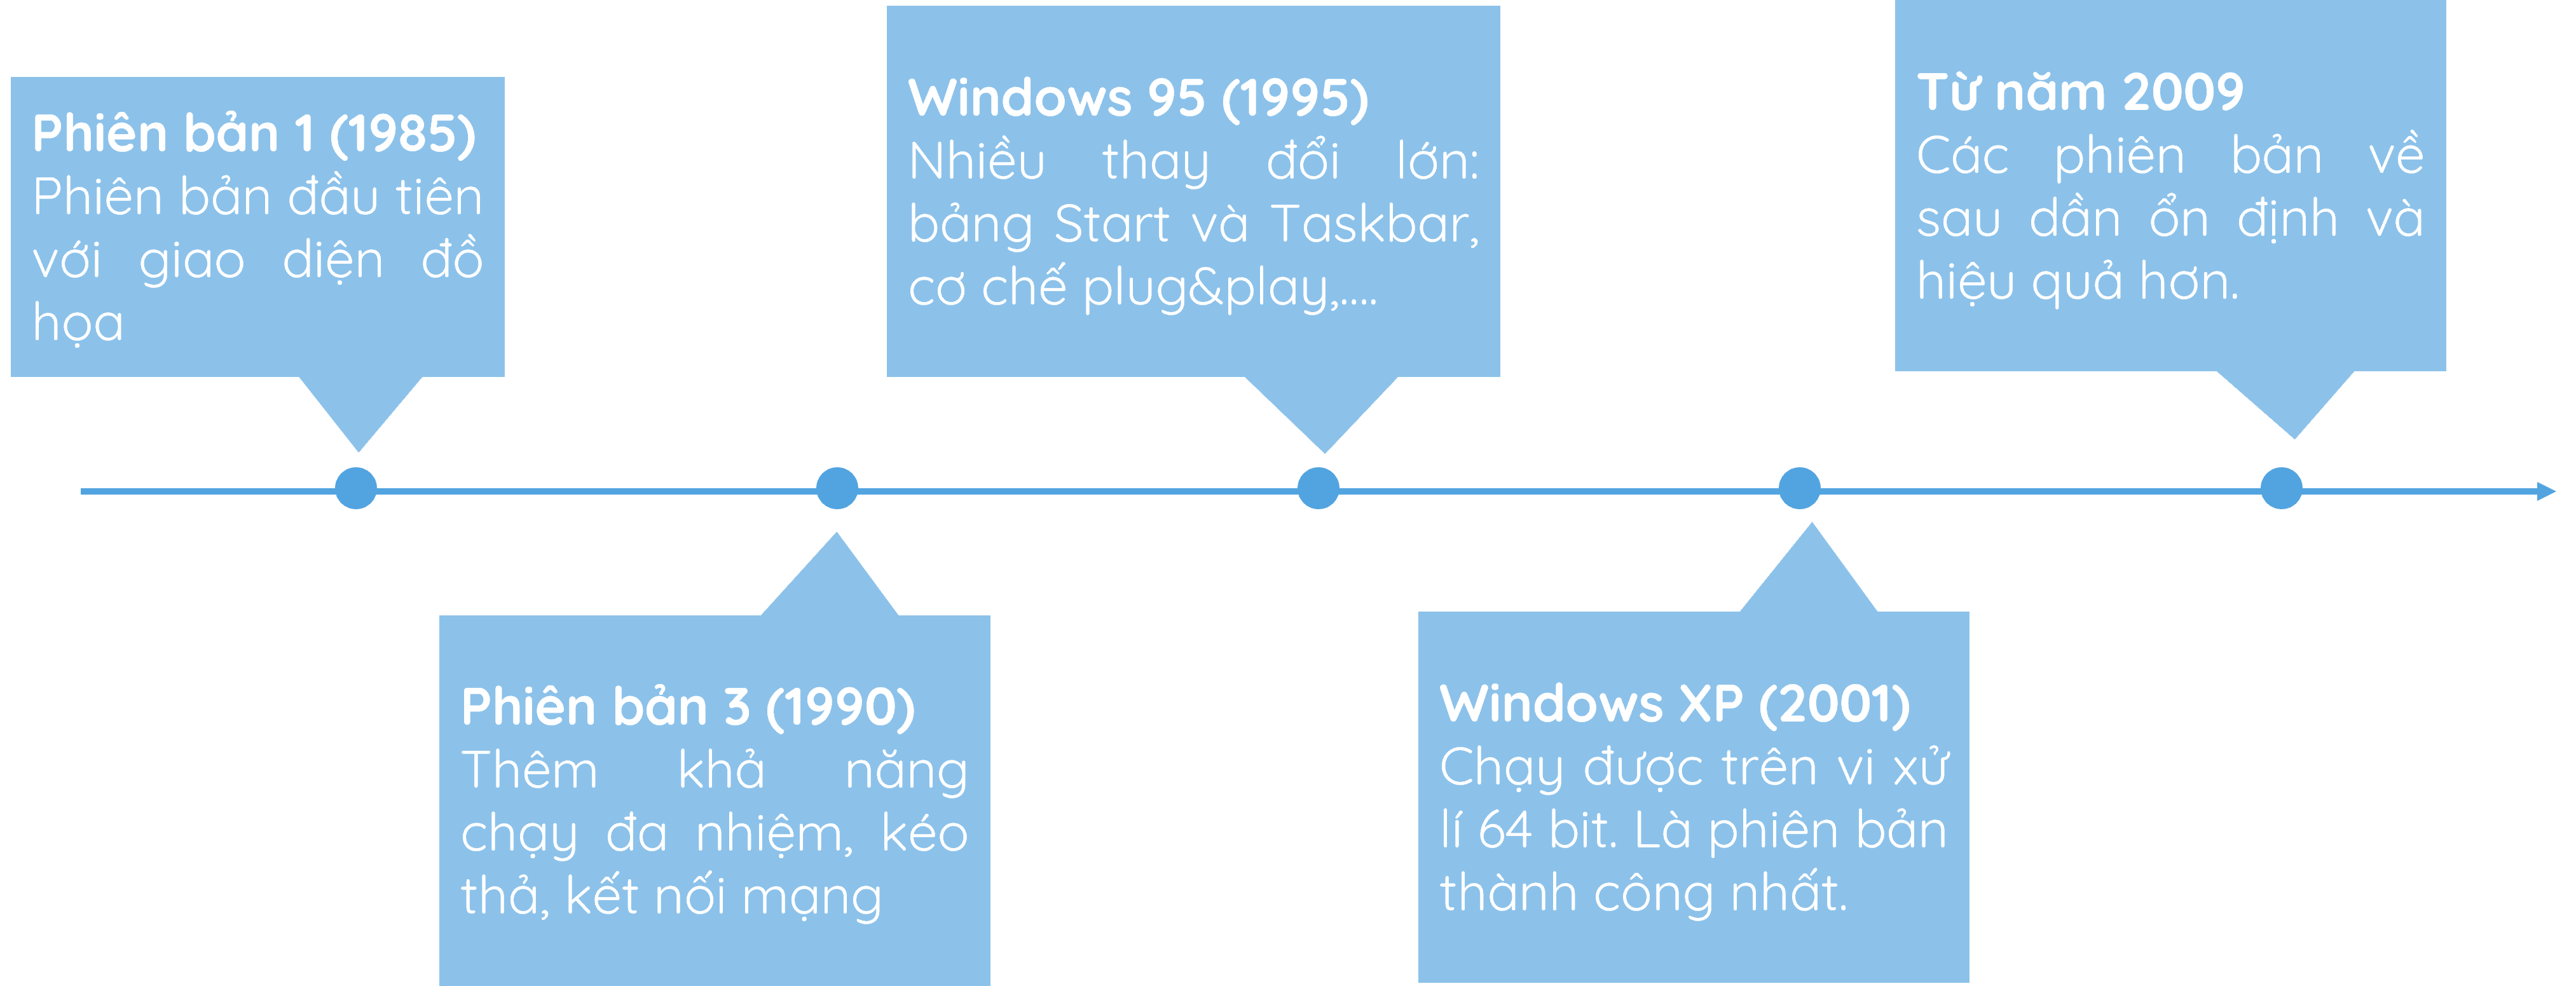 Các mốc thời gian của lịch sử hệ điều hành Windows